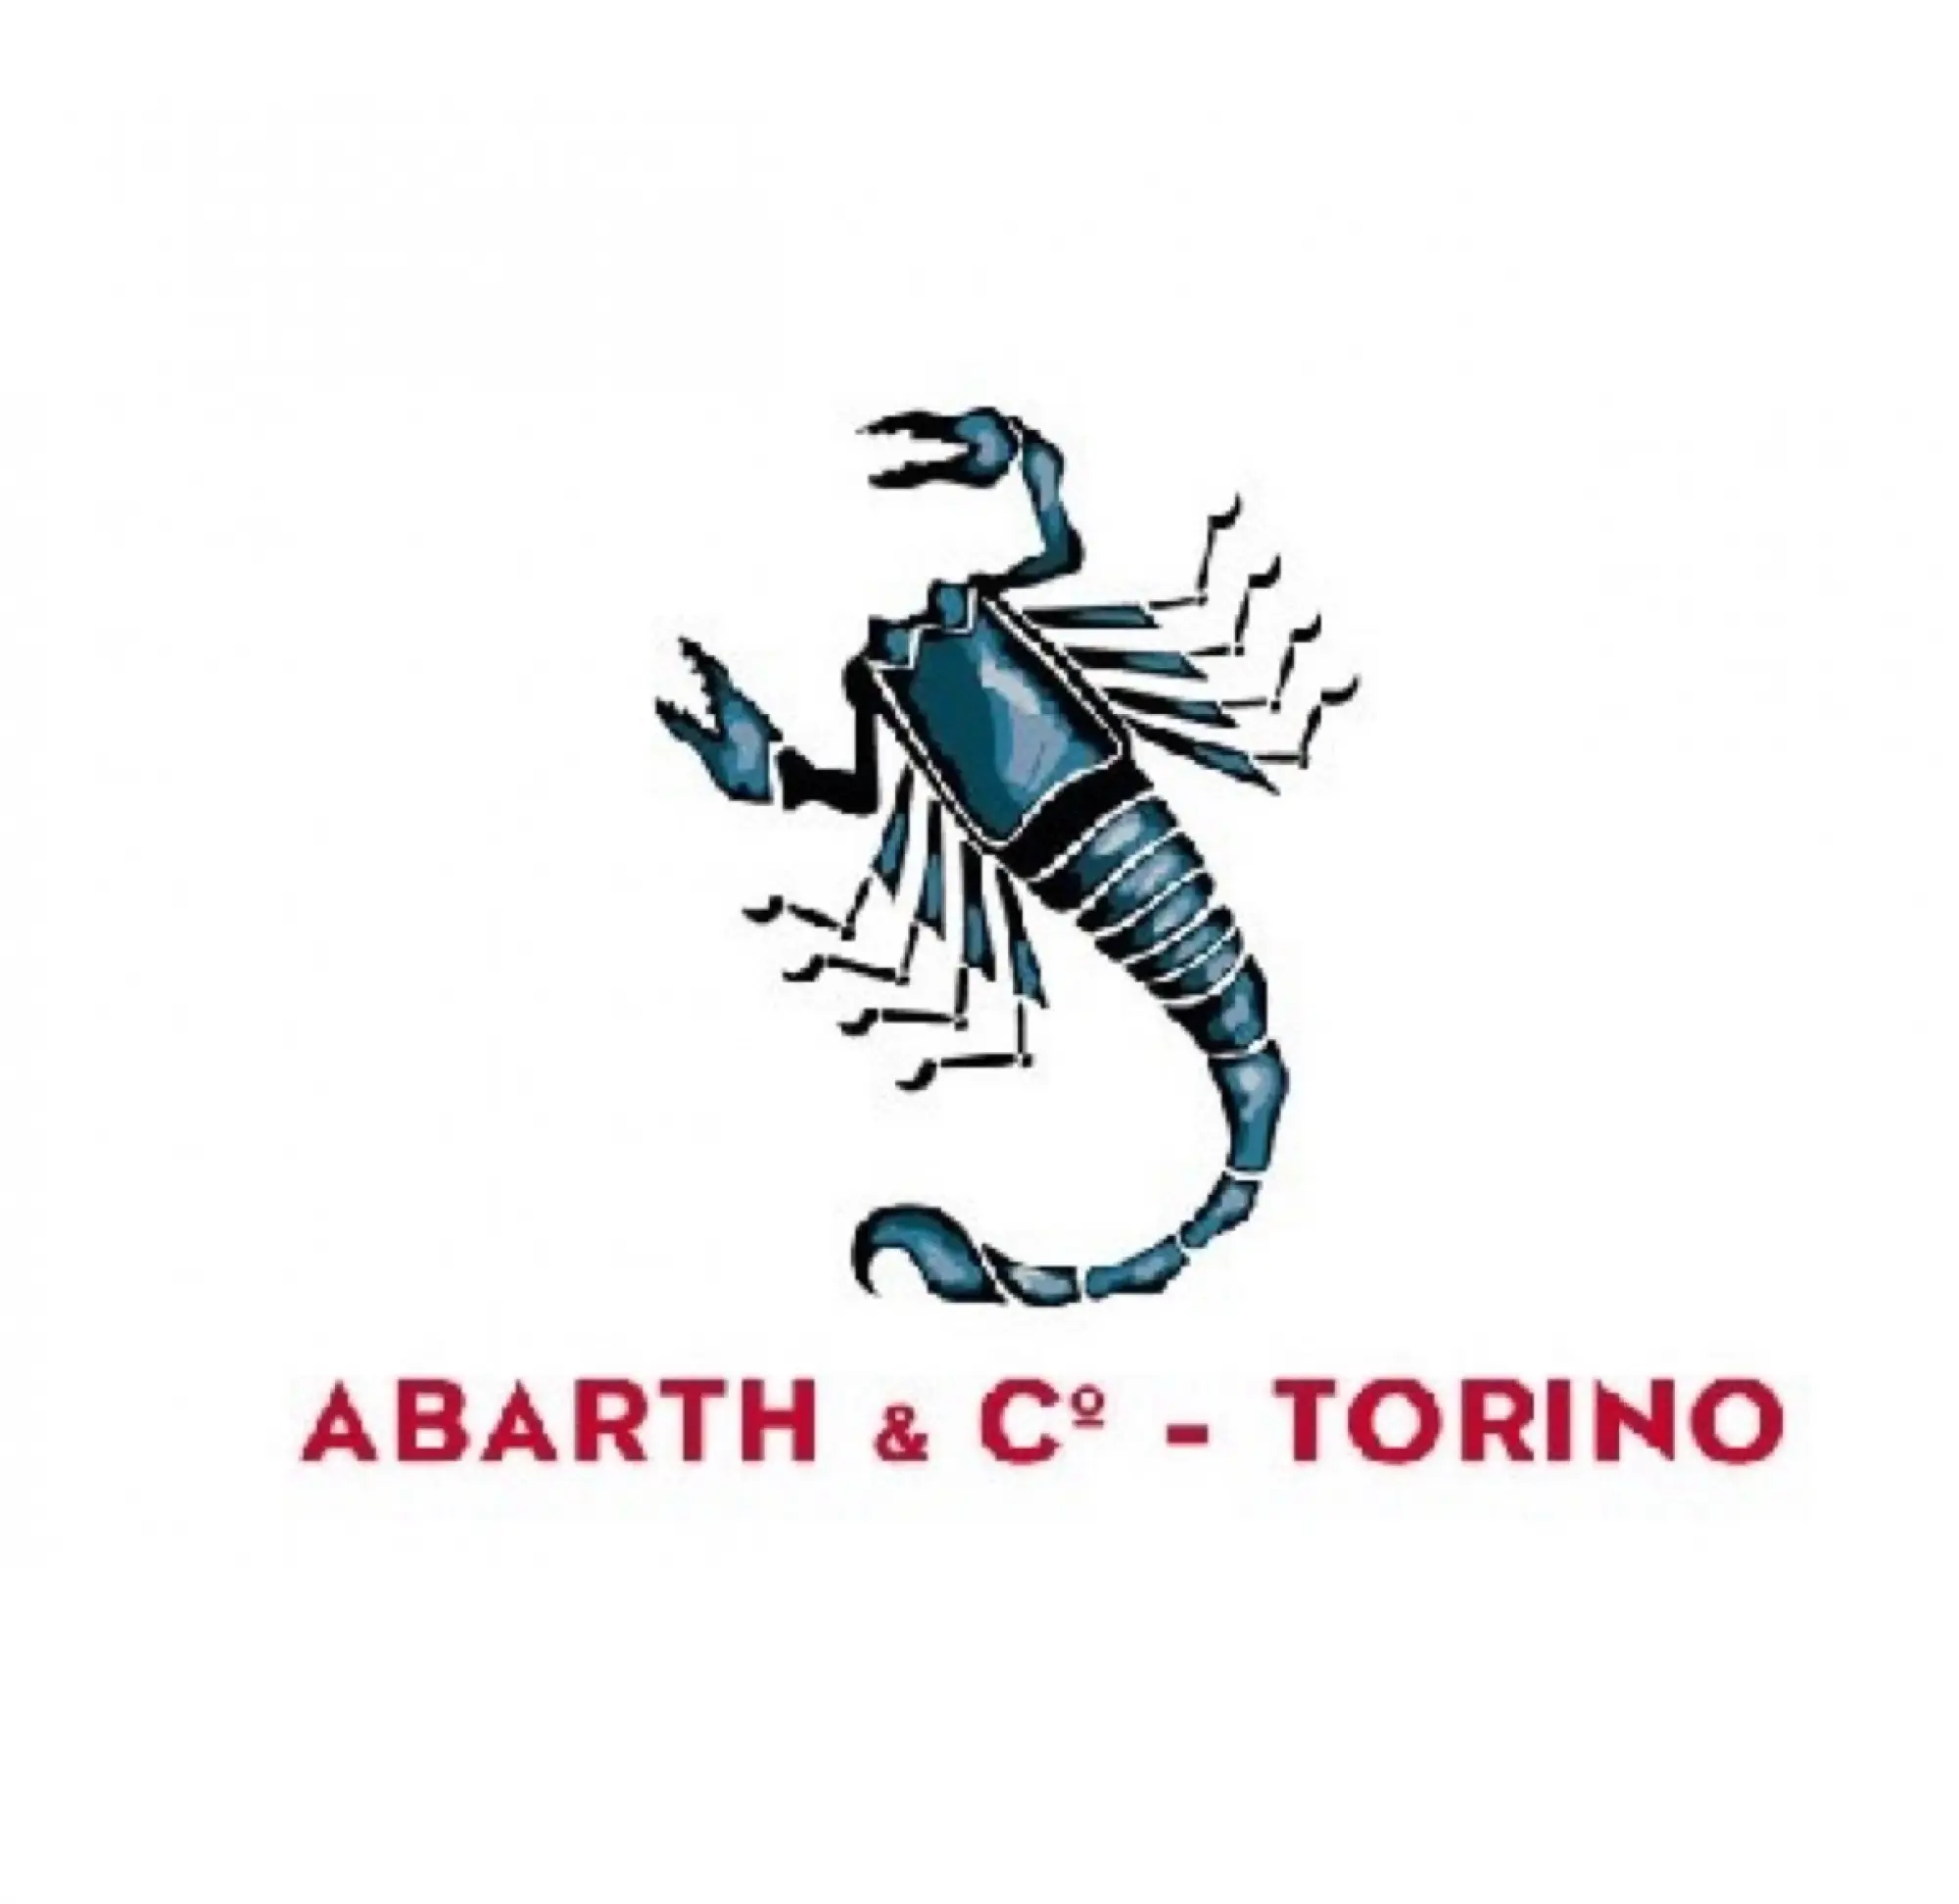 Abarth - La storia del logo dello Scorpione - 6